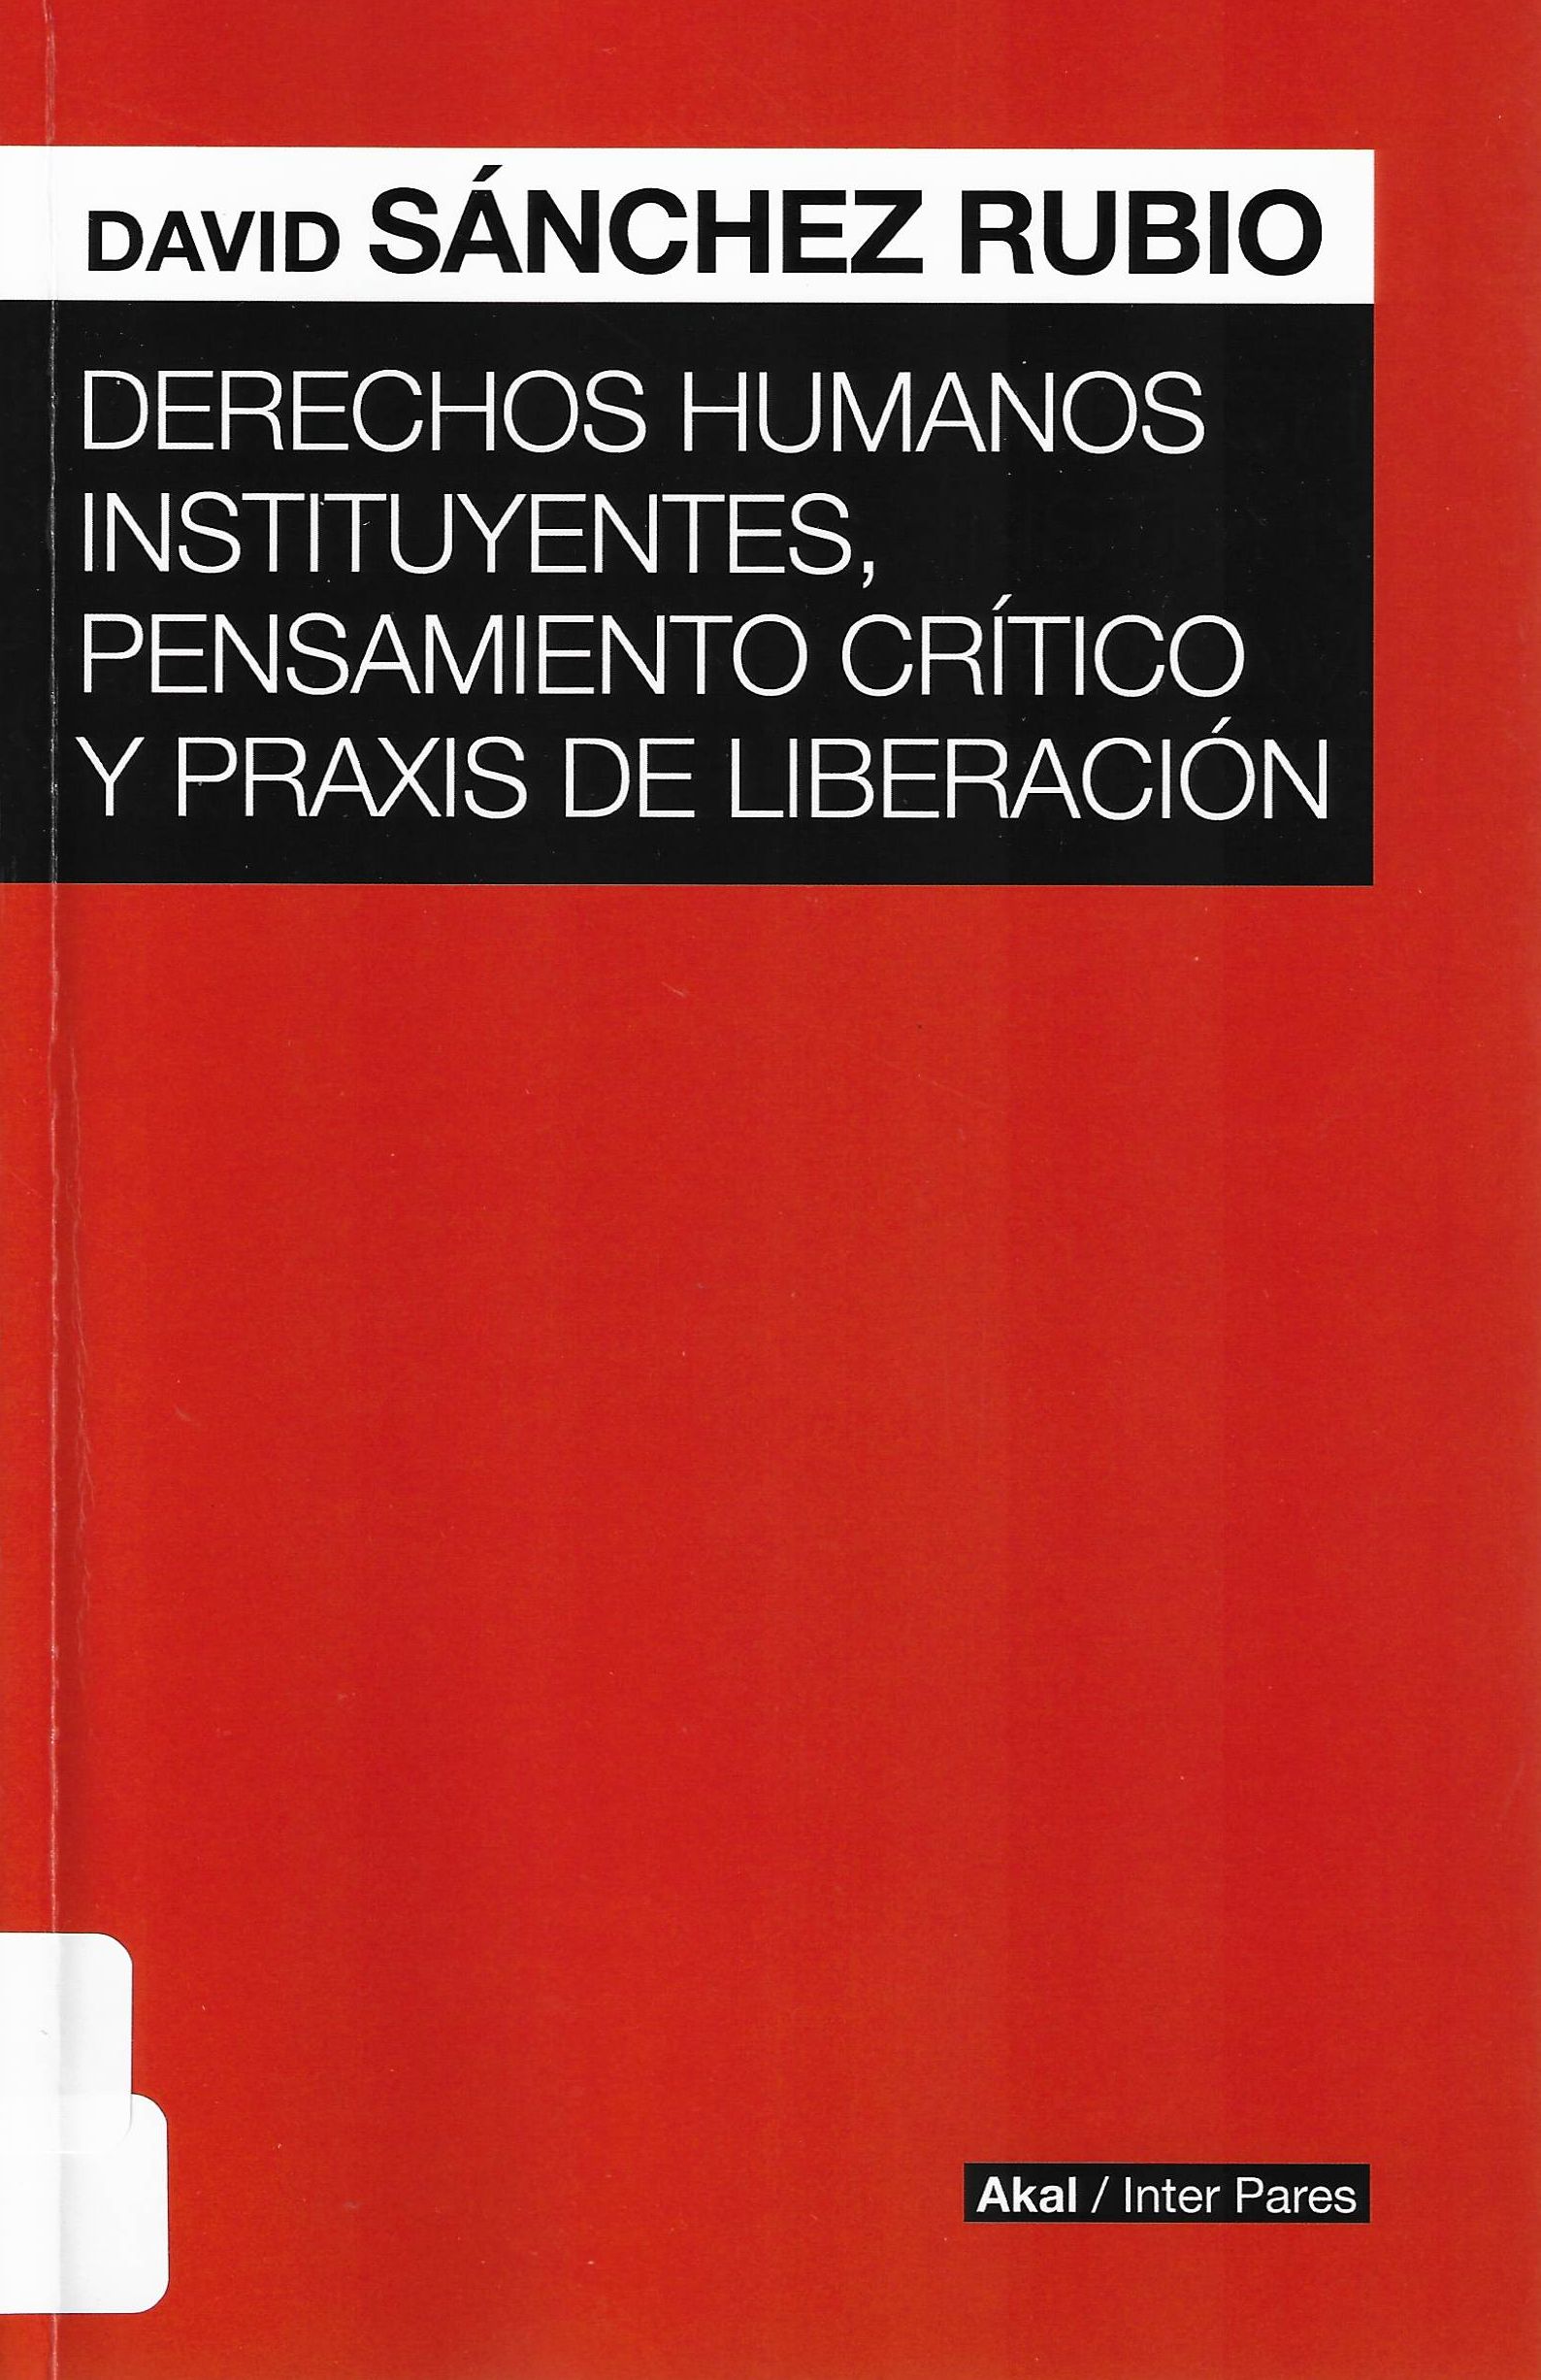 Imagen de portada del libro Derechos humanos instituyentes, pensamiento crítico y praxis de liberación